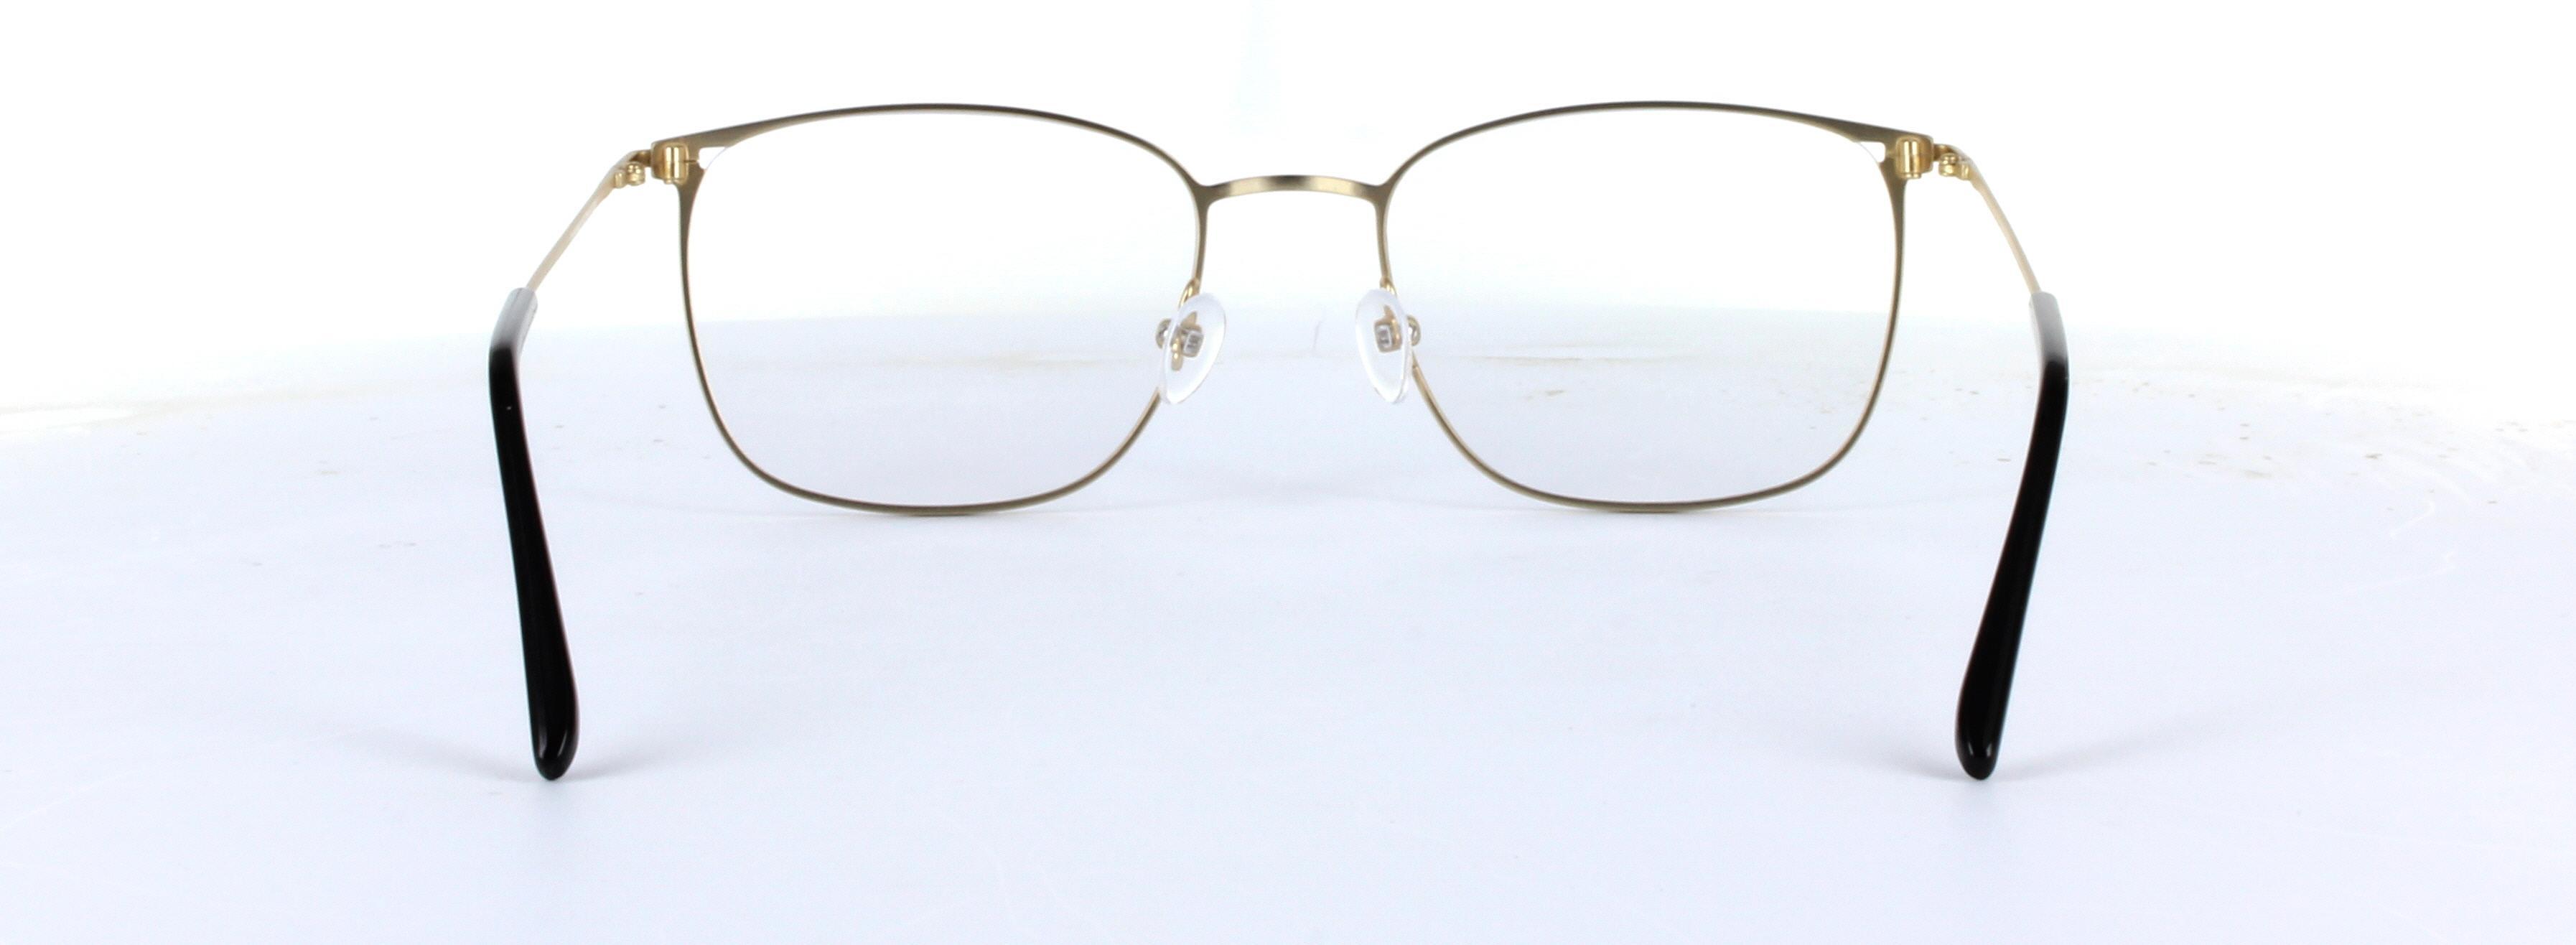 Hayden Brown Full Rim Rectangular Metal Glasses - Image View 3